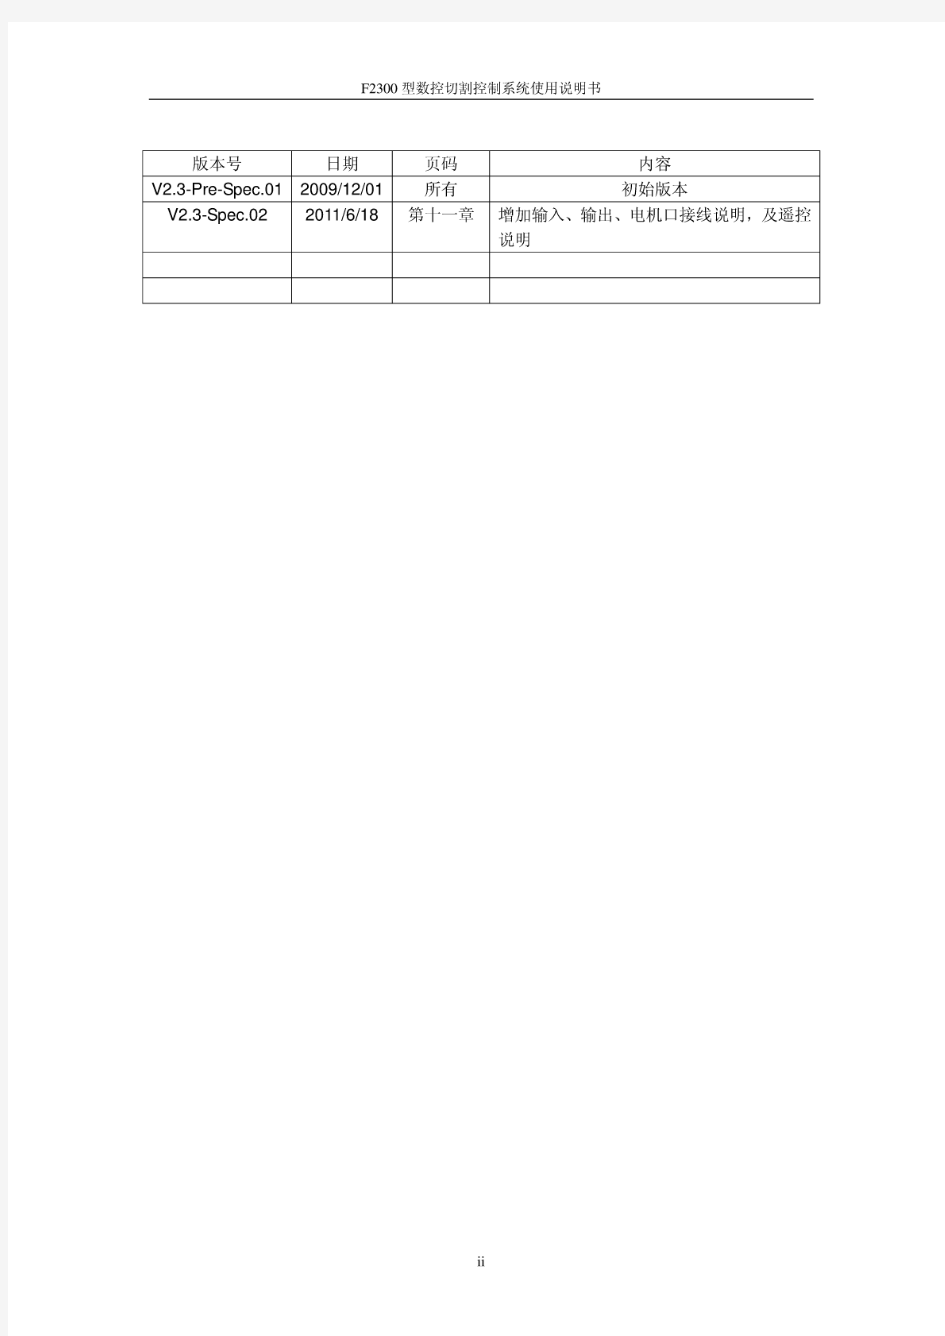 上海交大方菱数控切割机--数控平面切割控制系统(ver2.3)操作手册